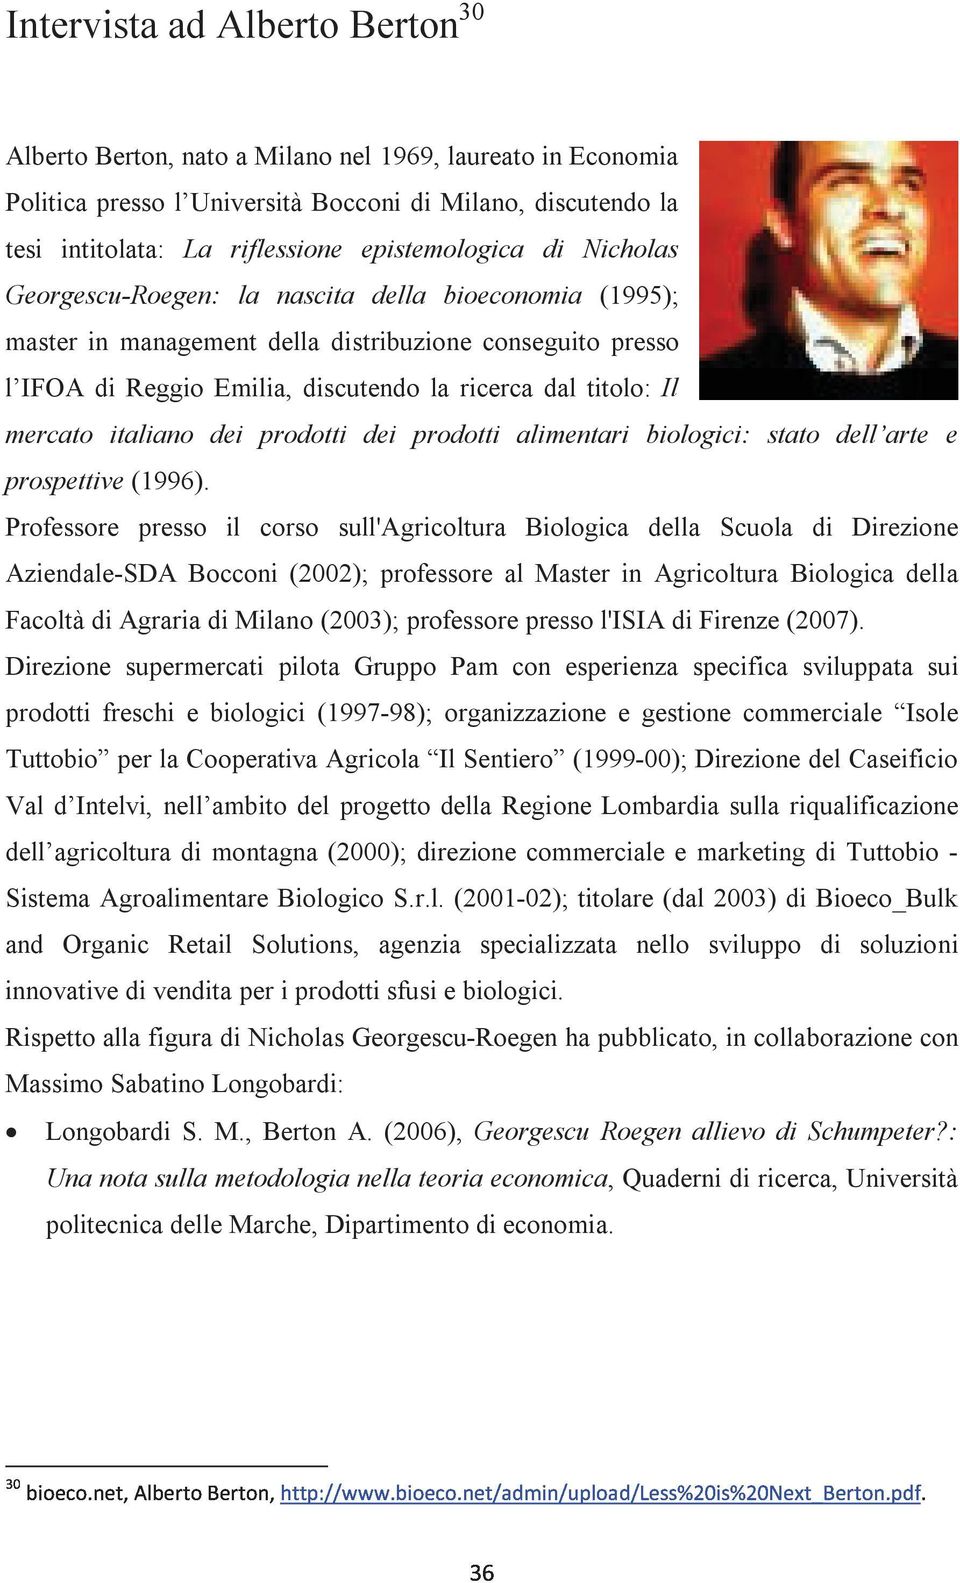 Il mercato italiano dei prodotti dei prodotti alimentari biologici: stato dell arte e prospettive (1996).